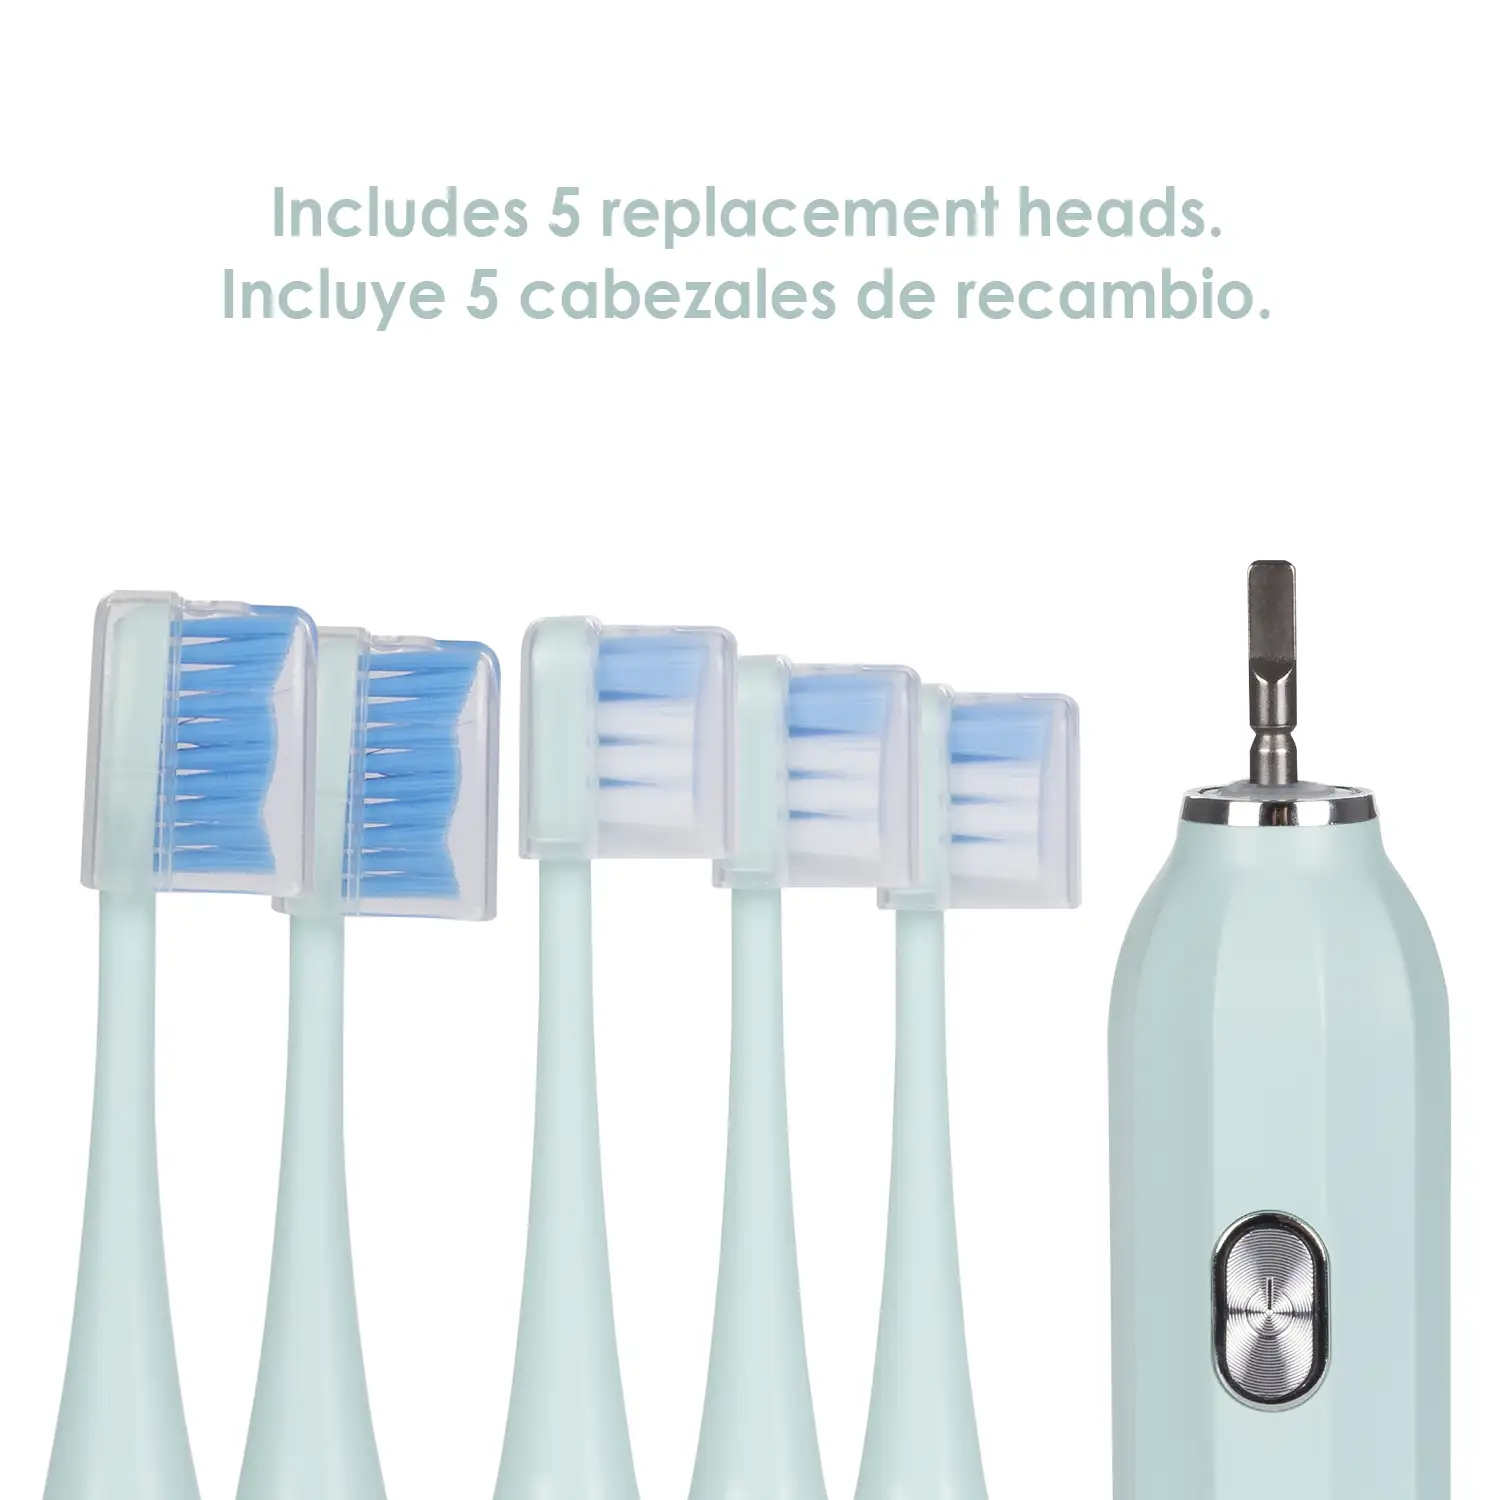 Cepillo dental eléctrico sónico ET05, con 5 modos de cepillado. Incluye 5 cabezales.